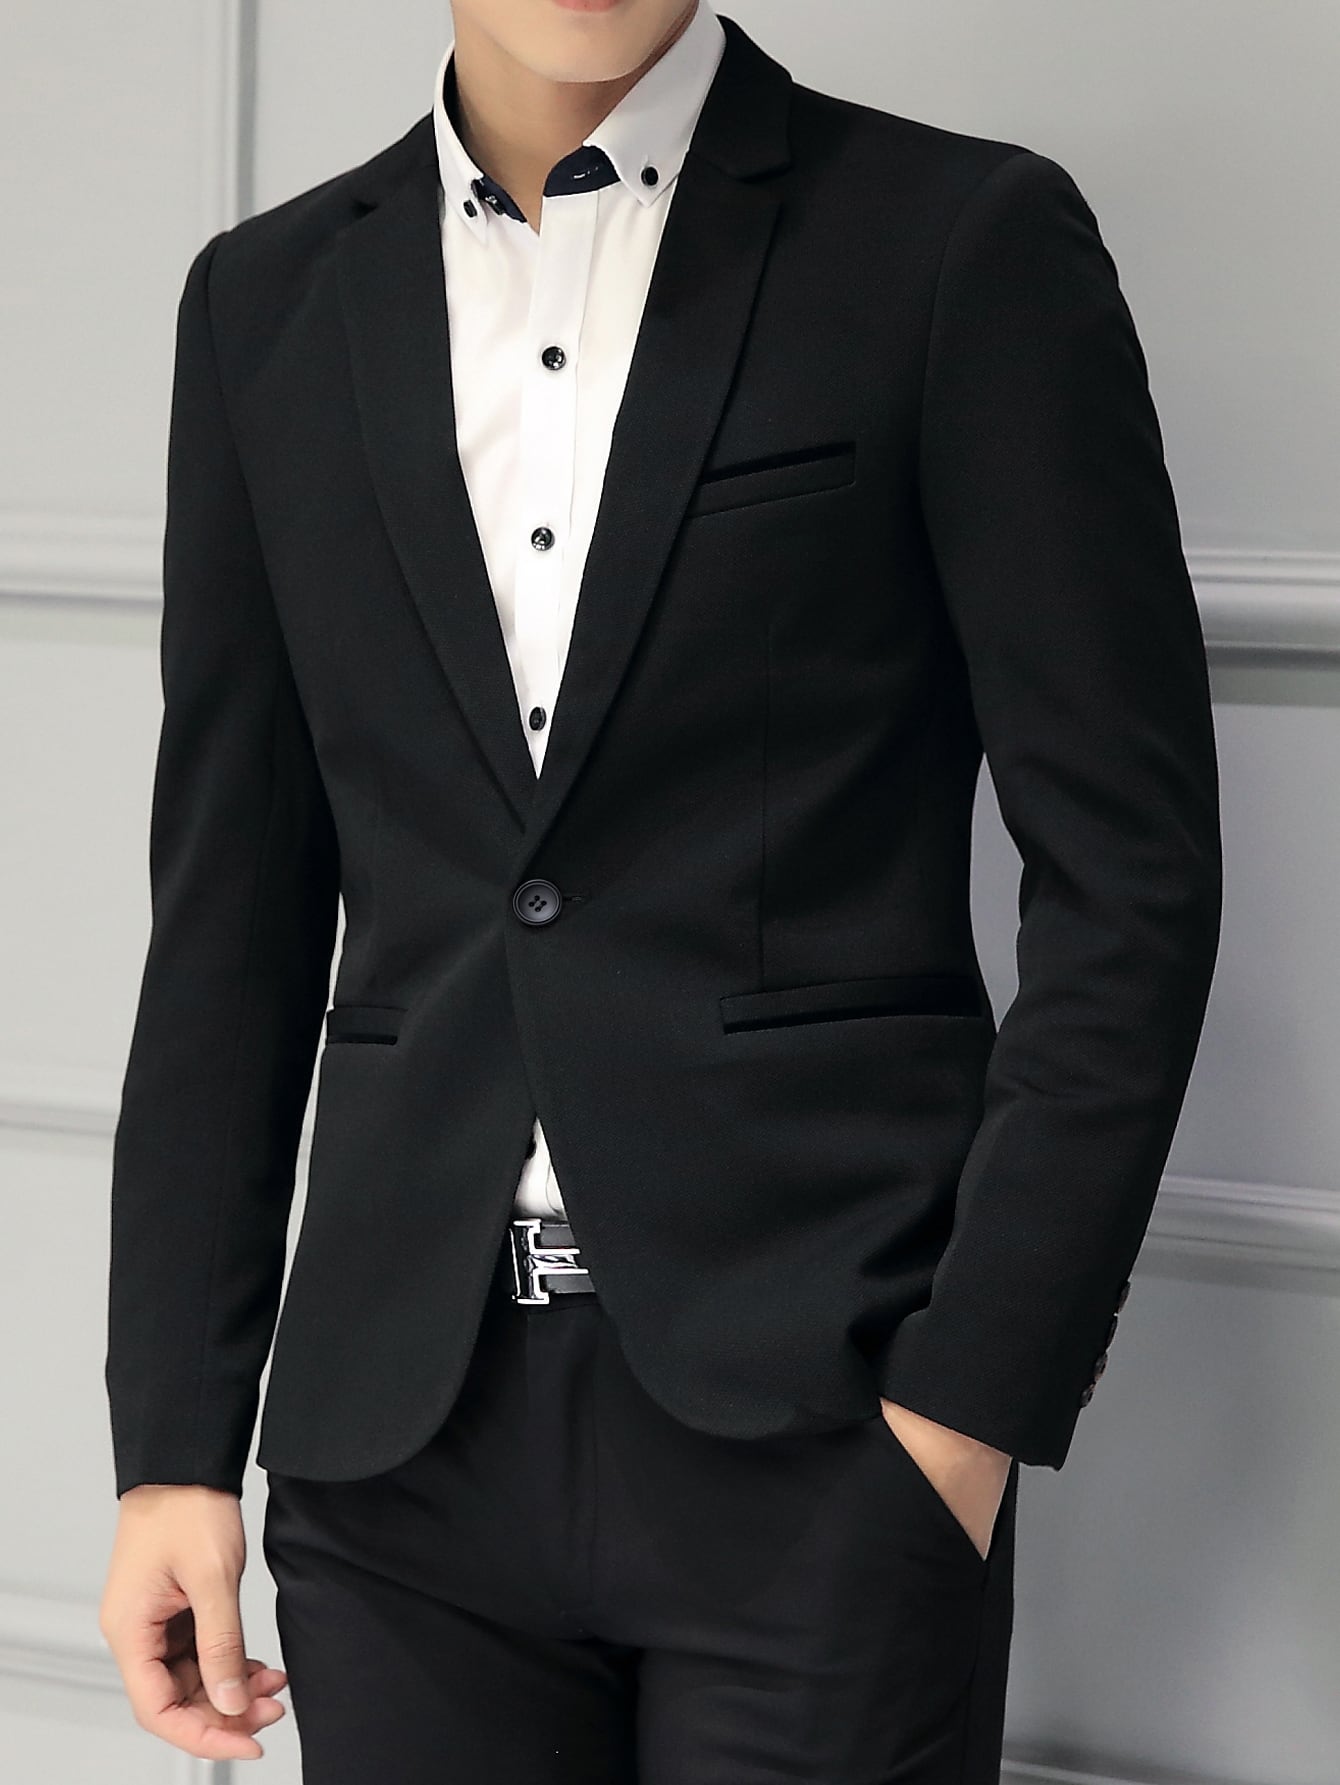 Мужской пиджак с воротником с лацканами и длинными рукавами Manfinity Mode, черный однотонный пиджак на одной пуговице tommy hilfiger цвет rosette